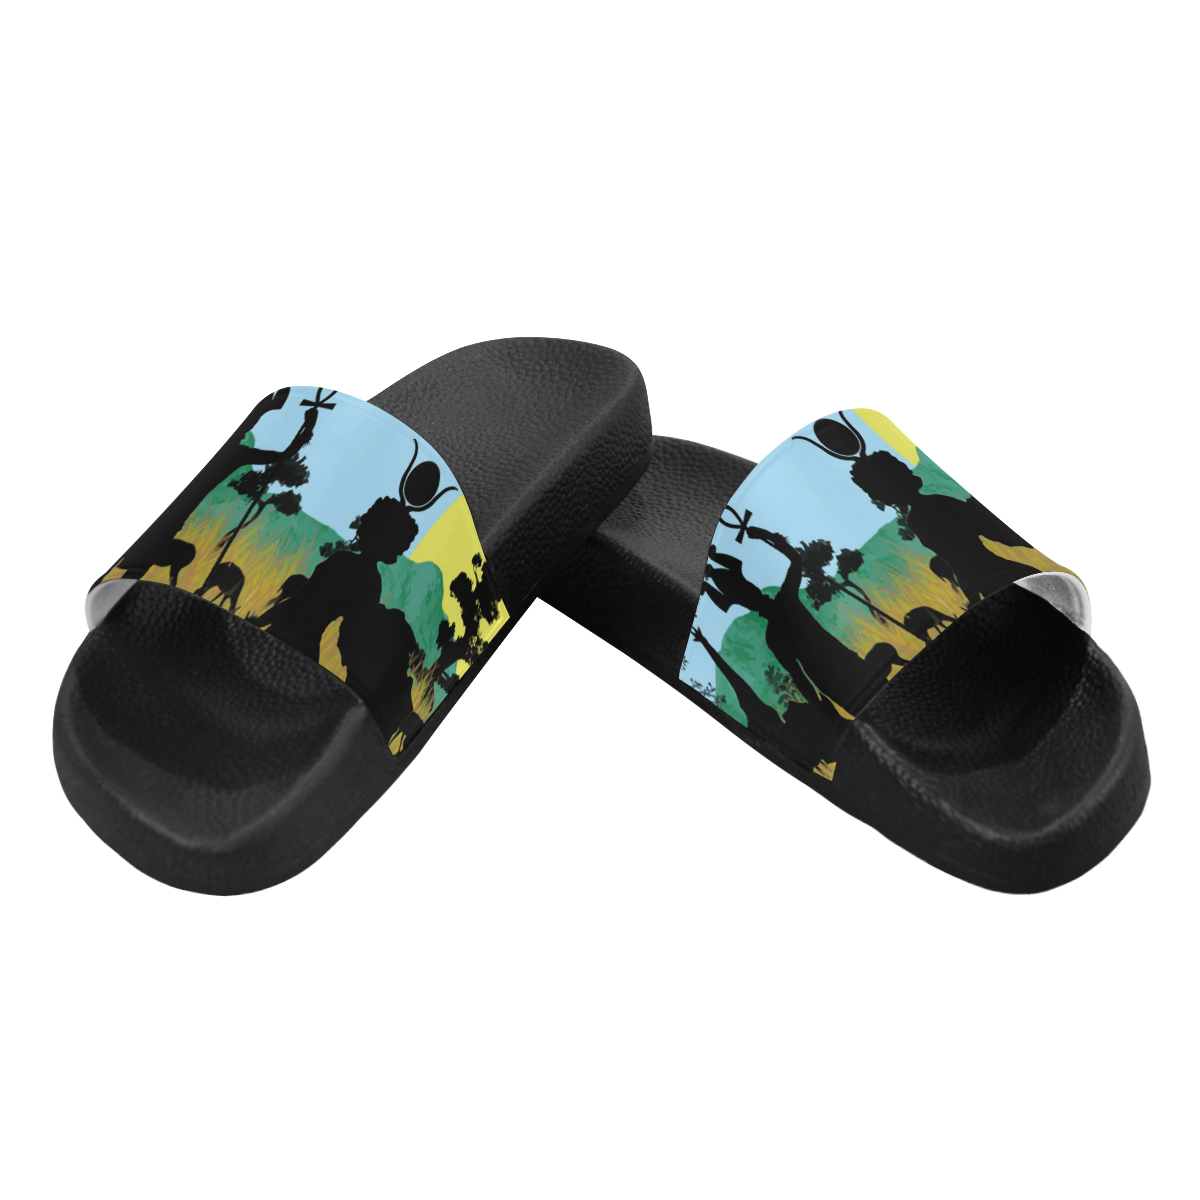 SAFARI NTR WARRIOR Men's Slide Sandals (Model 057)